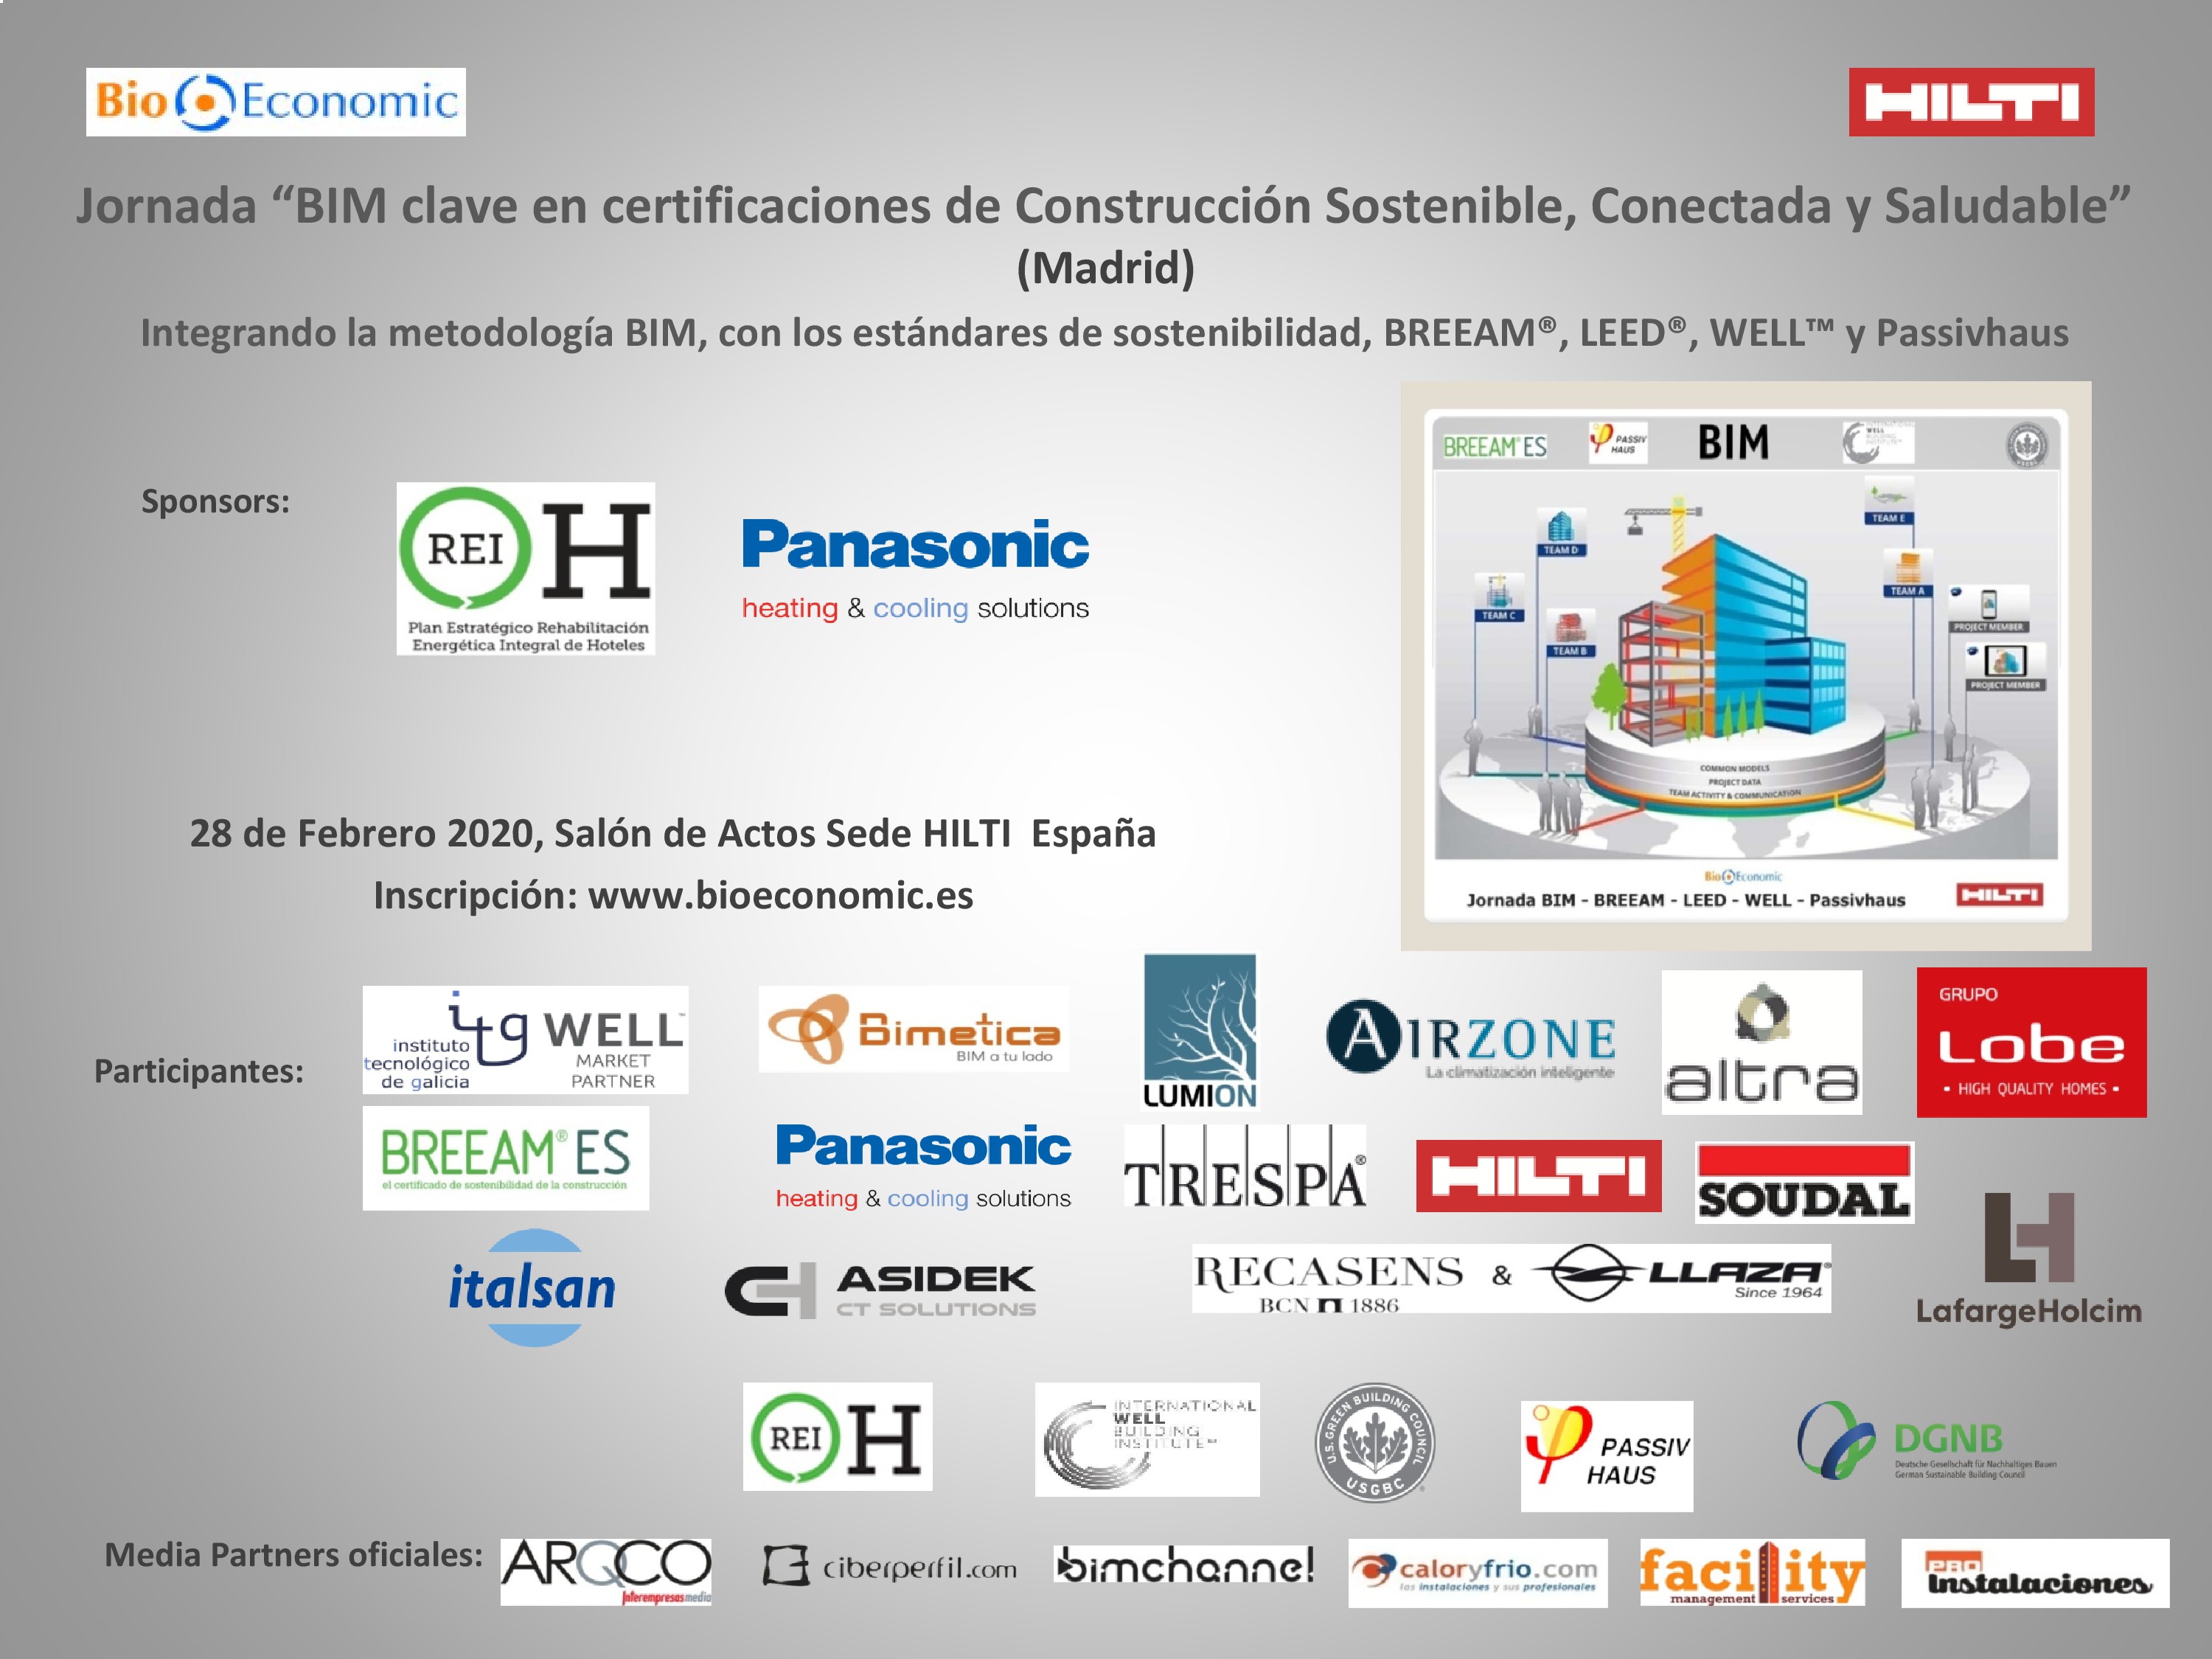 Jornada “BIM clave en certificaciones de Construcción Sostenible, Conectada y Saludable” Madrid